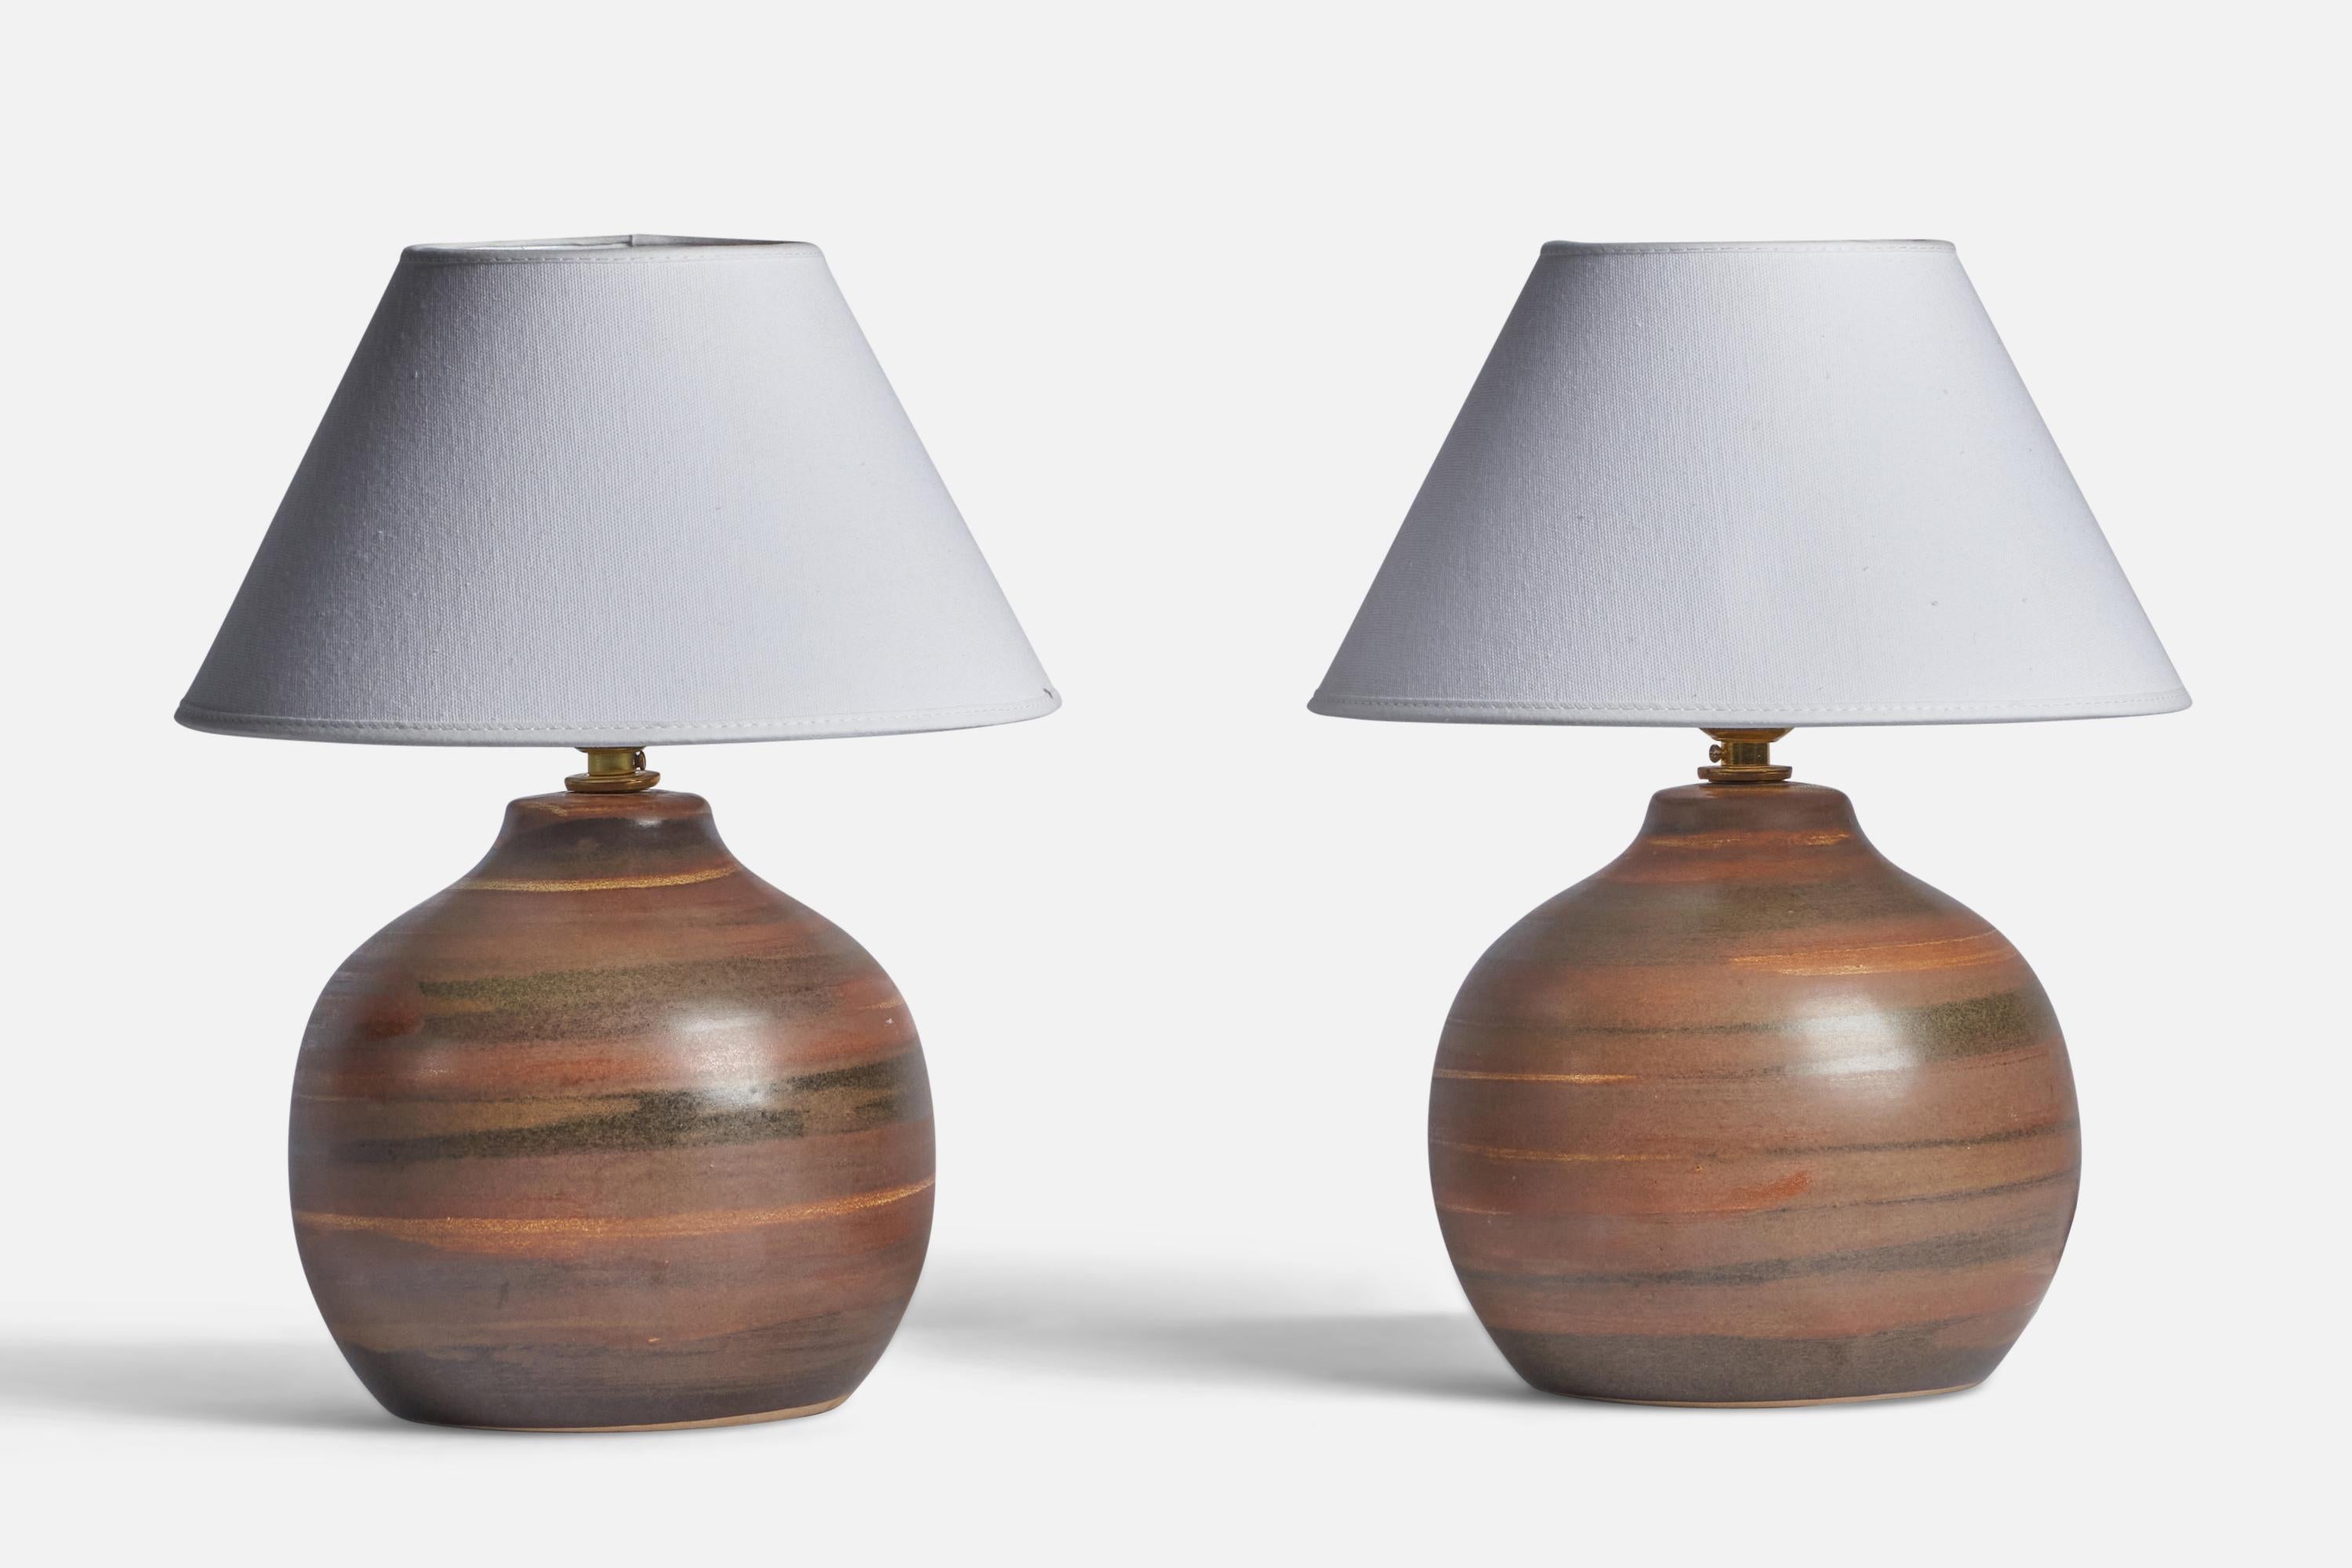 Paire de lampes de table en céramique émaillée brune conçues par Jane & Gordon Martz et produites par Marshall Studios, États-Unis, années 1960.

Dimensions de la lampe (pouces) : 9.75